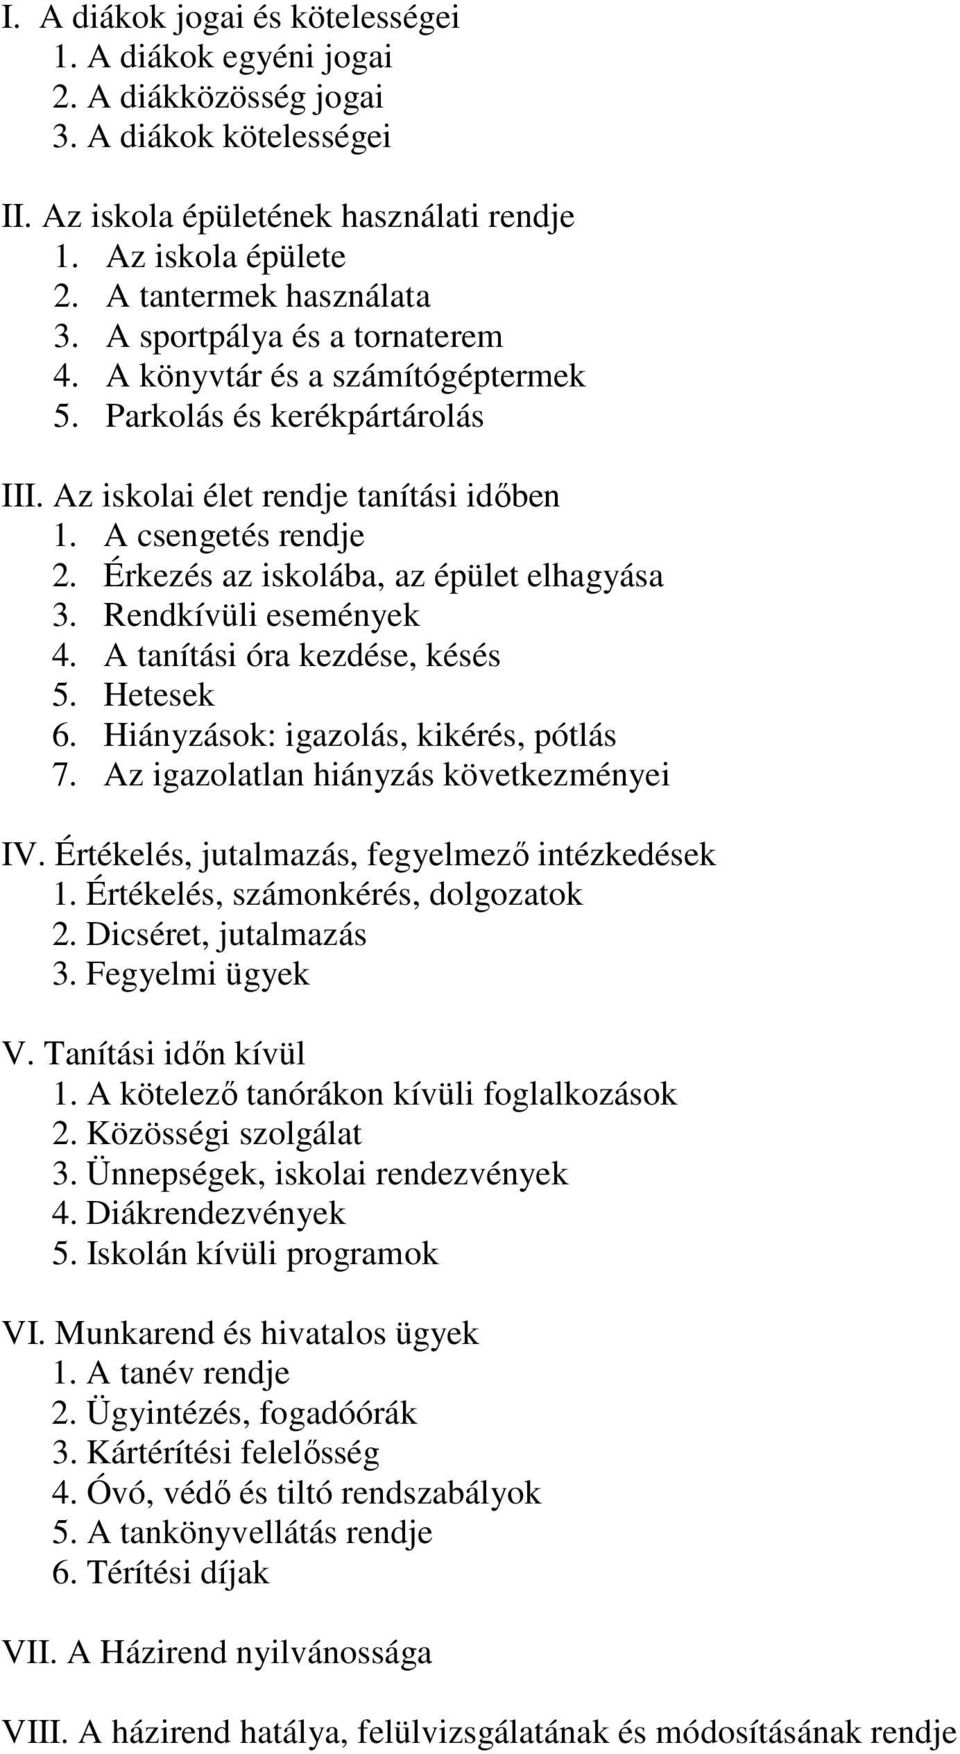 A gödöllői Török Ignác Gimnázium Házirendje - PDF Free Download